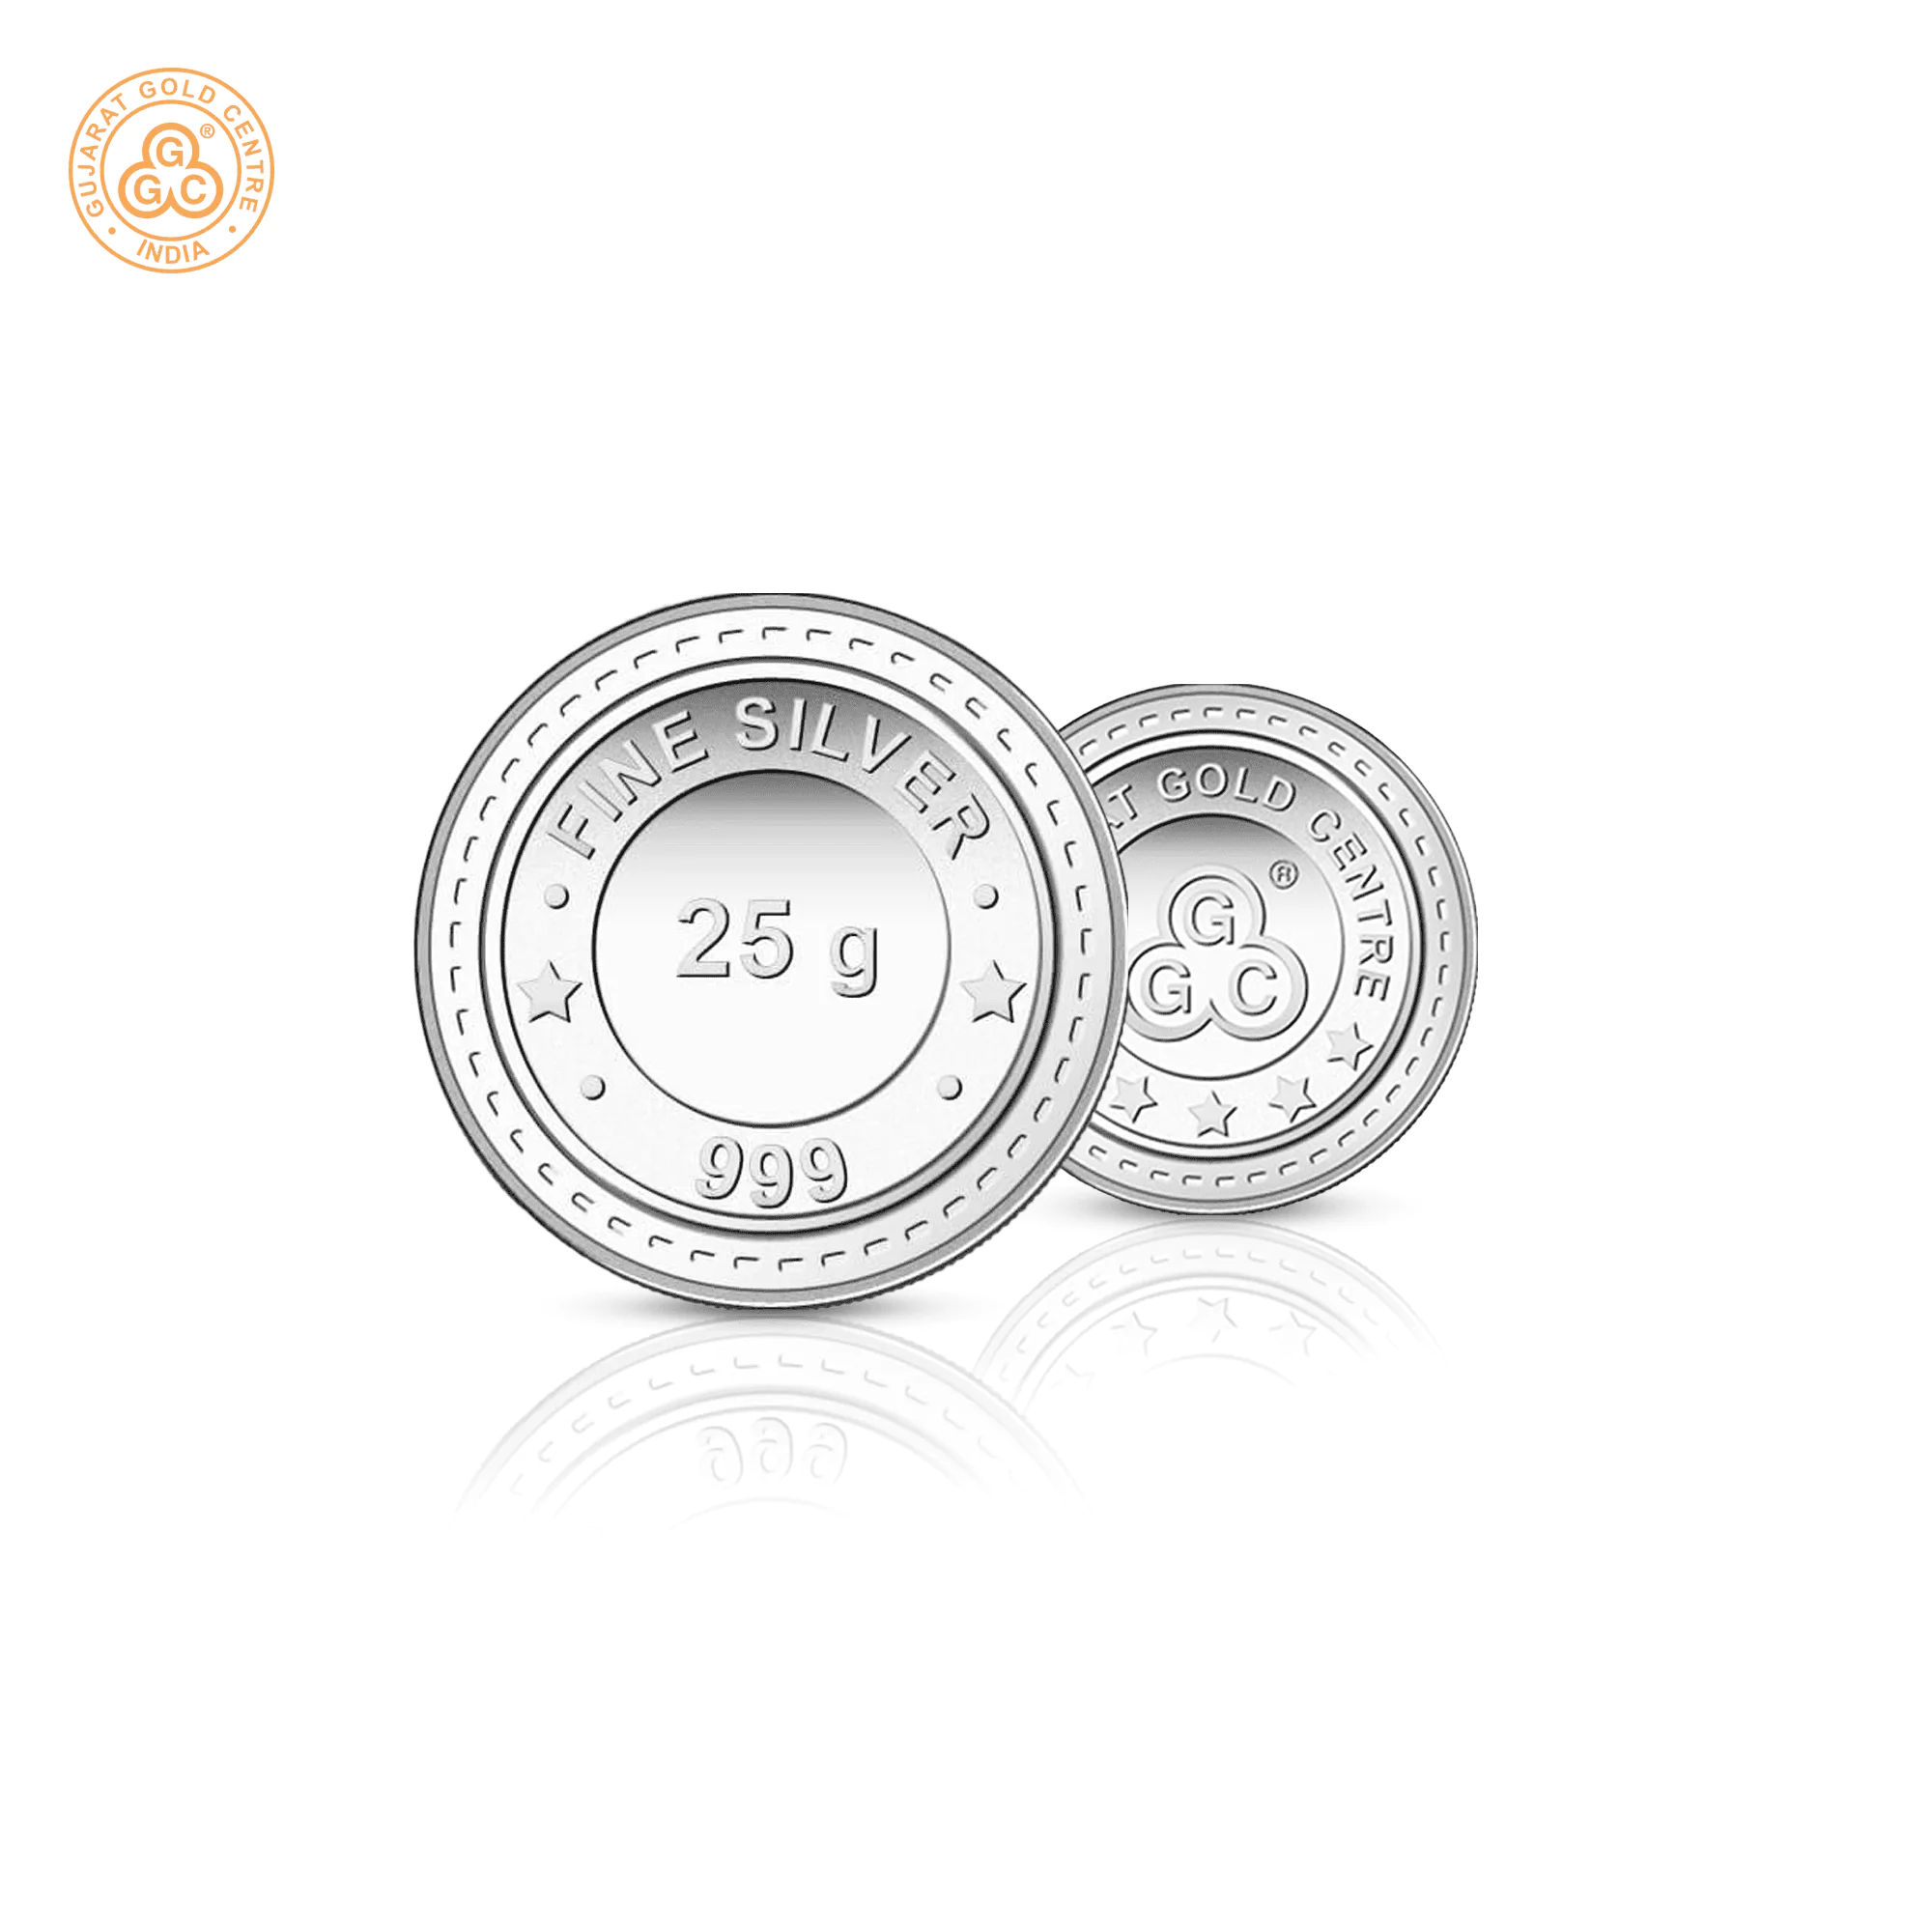 25gm GGC 24K Silver Coin